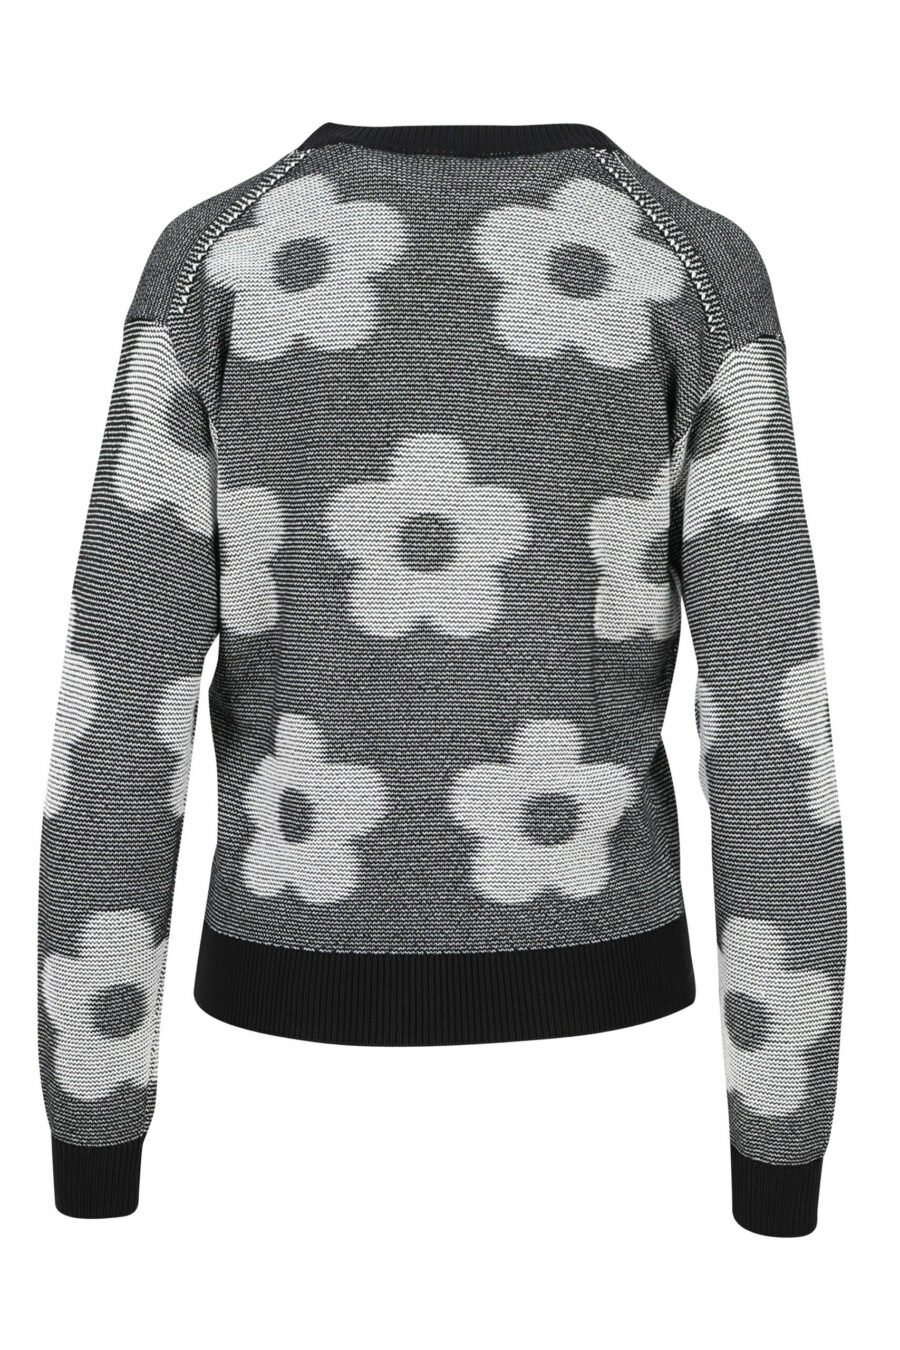 Pull gris avec boutons "all over boke flower logo" - 3612230522862 1 échelle